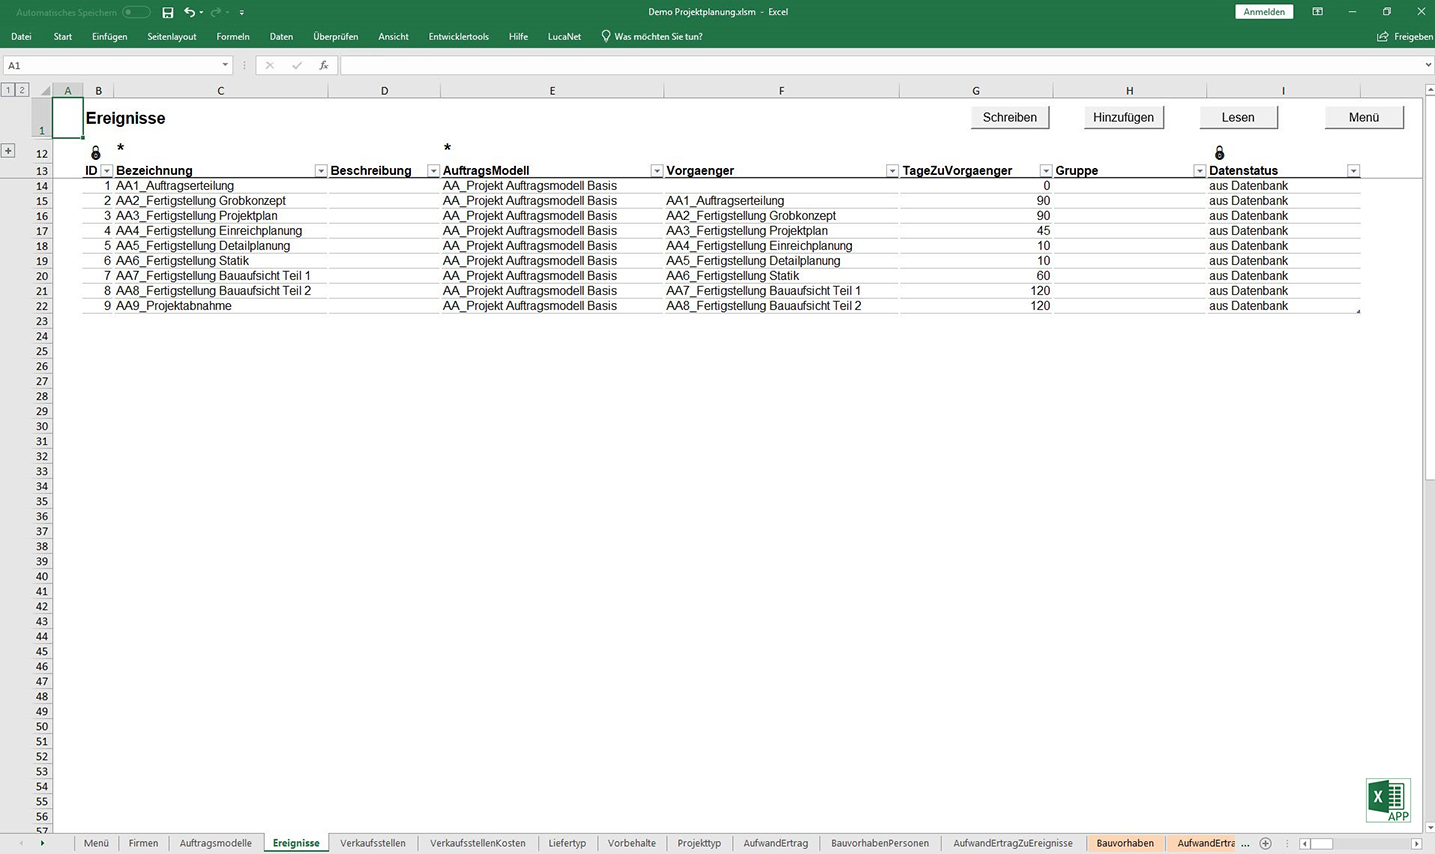 Ereignisse in der Excel APP "Projektplanung" von consultnetwork